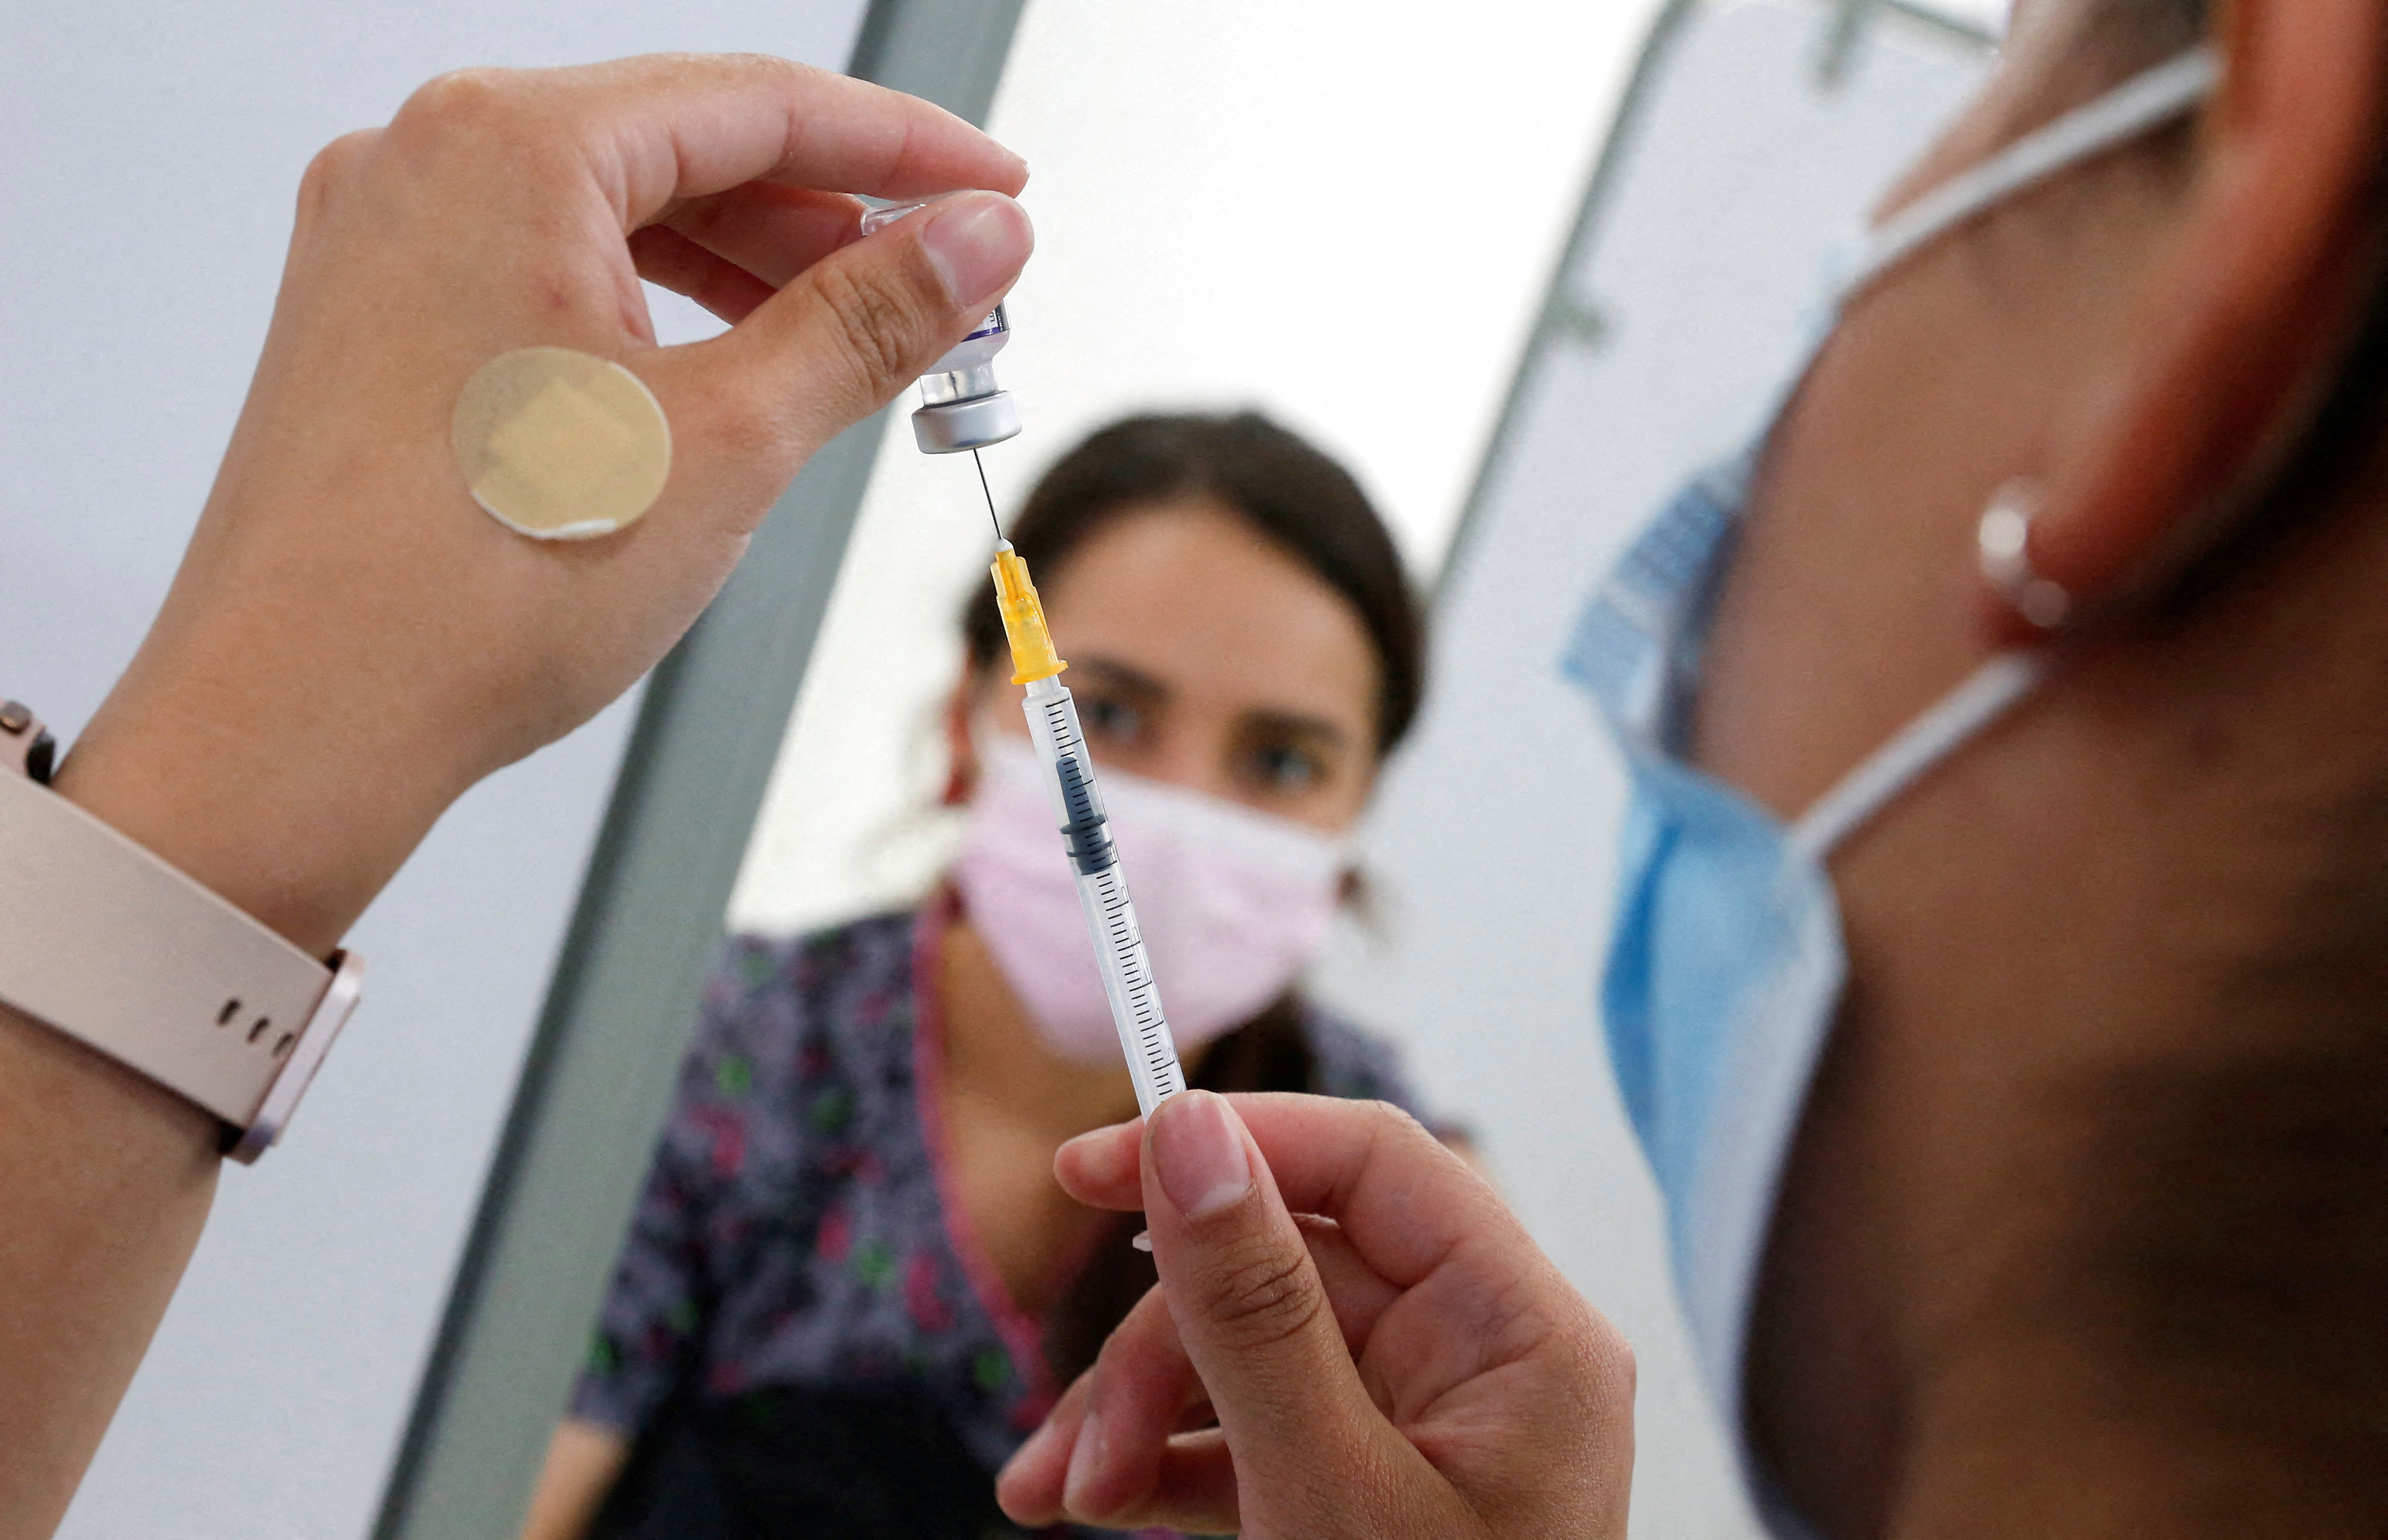 Un trabajador de la salud prepara una vacuna contra el coronavirus (COVID-19) el 3 de enero de 2022 en una clínica móvil de vacunación en Valparaíso, Chile.  REUTERS/Rodrigo Garrido